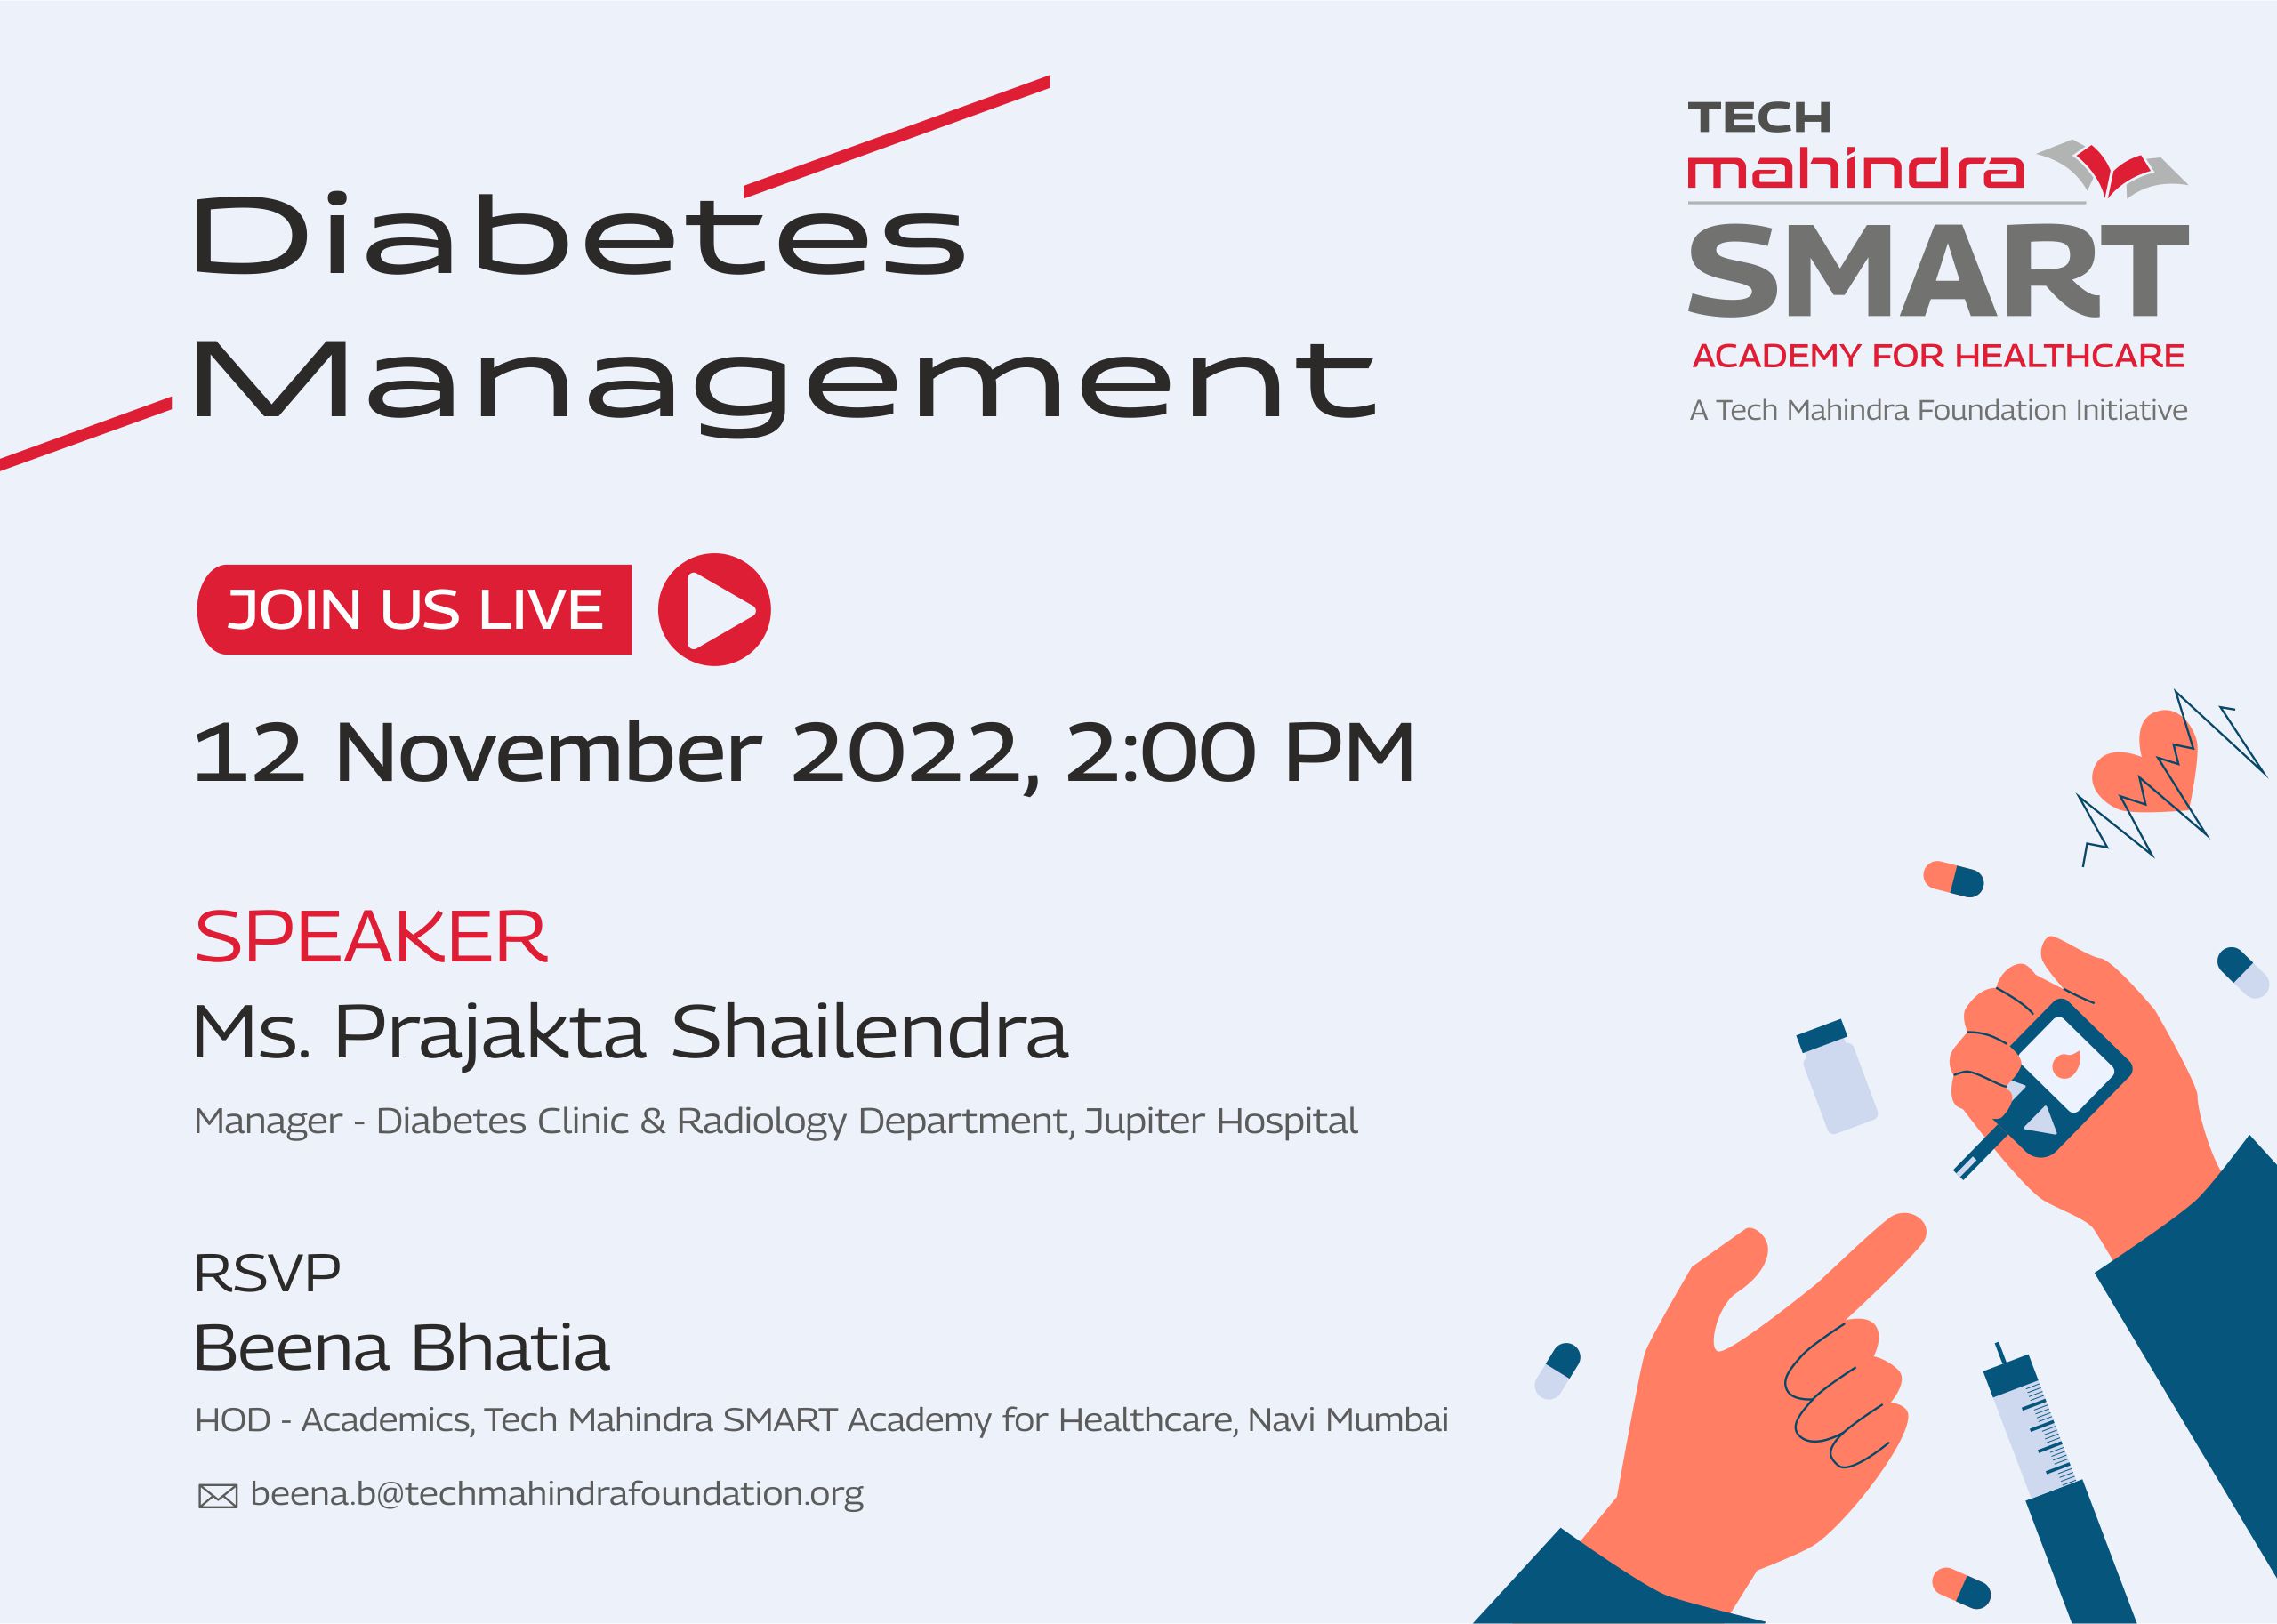 Diabetes Management